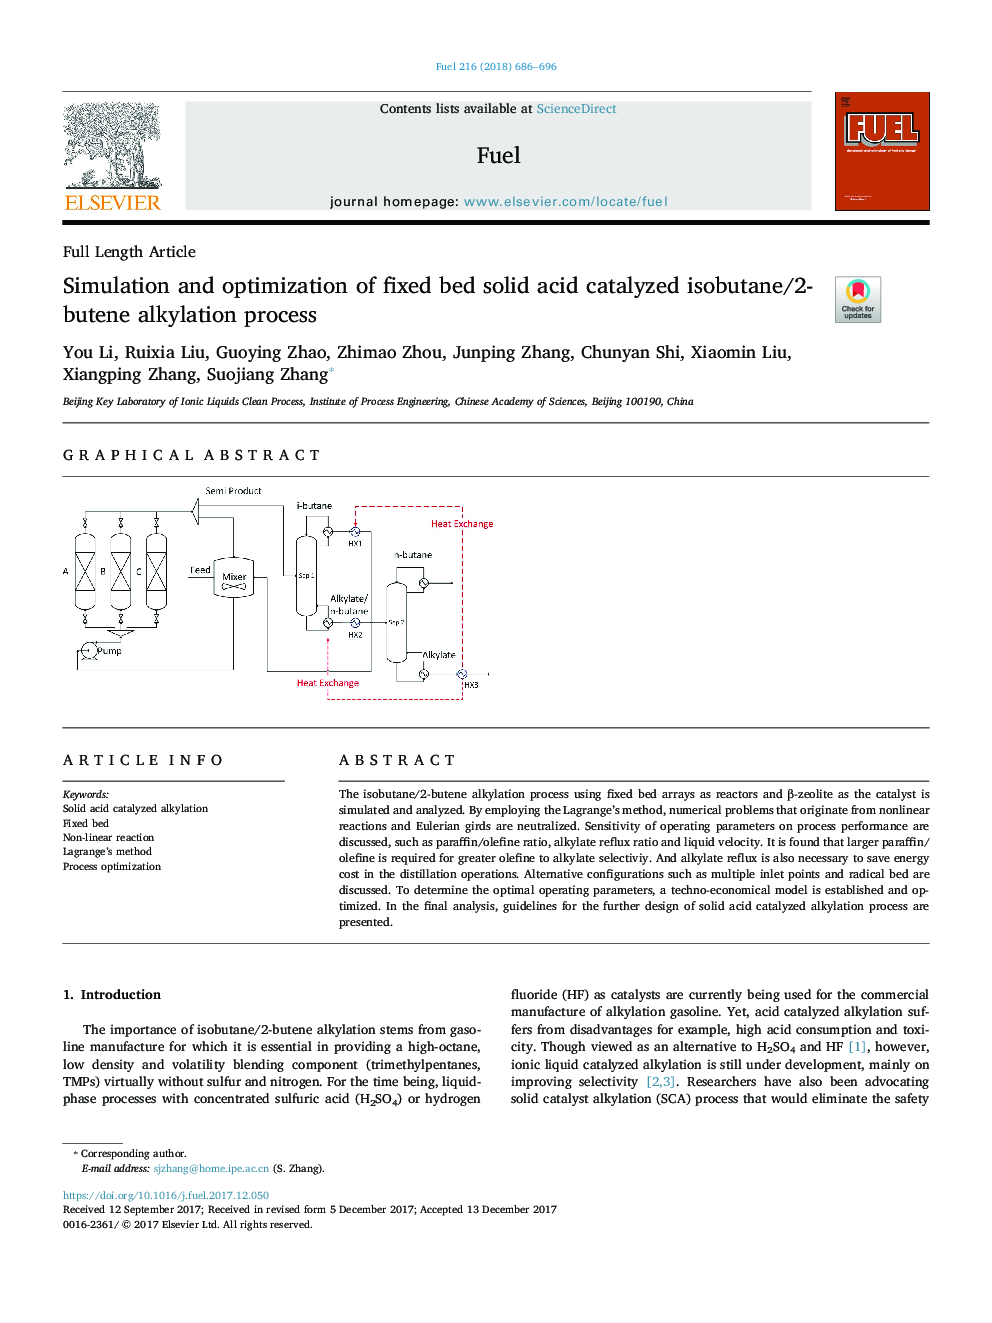 شبیه سازی و بهینه سازی فرایند آلکالیزاسیون ایزوبوتان / 2-بوتن کاتالیز شده اسید کربن ثابت 